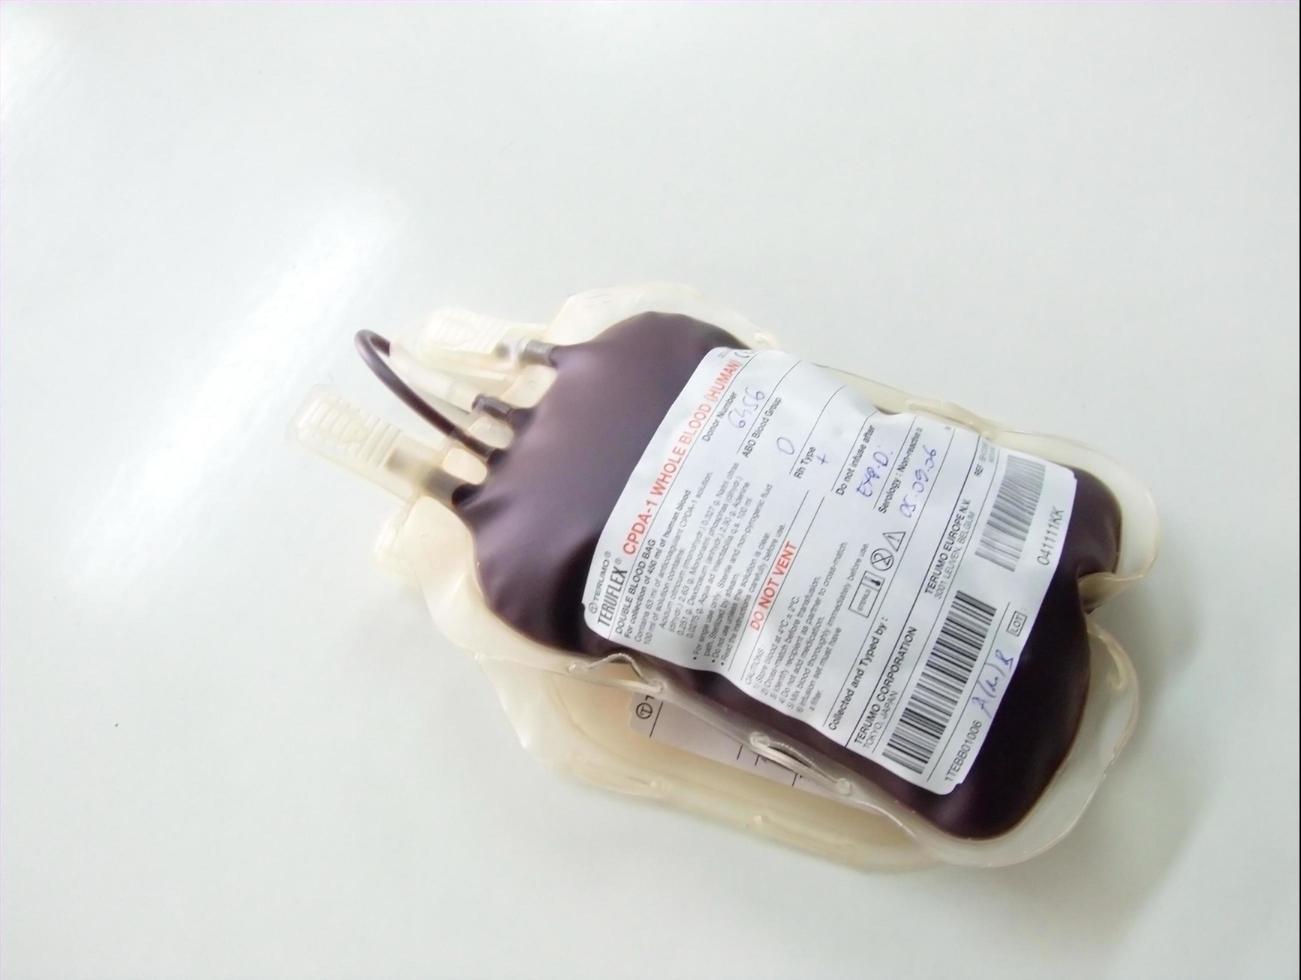 bolsa de doação de sangue foto